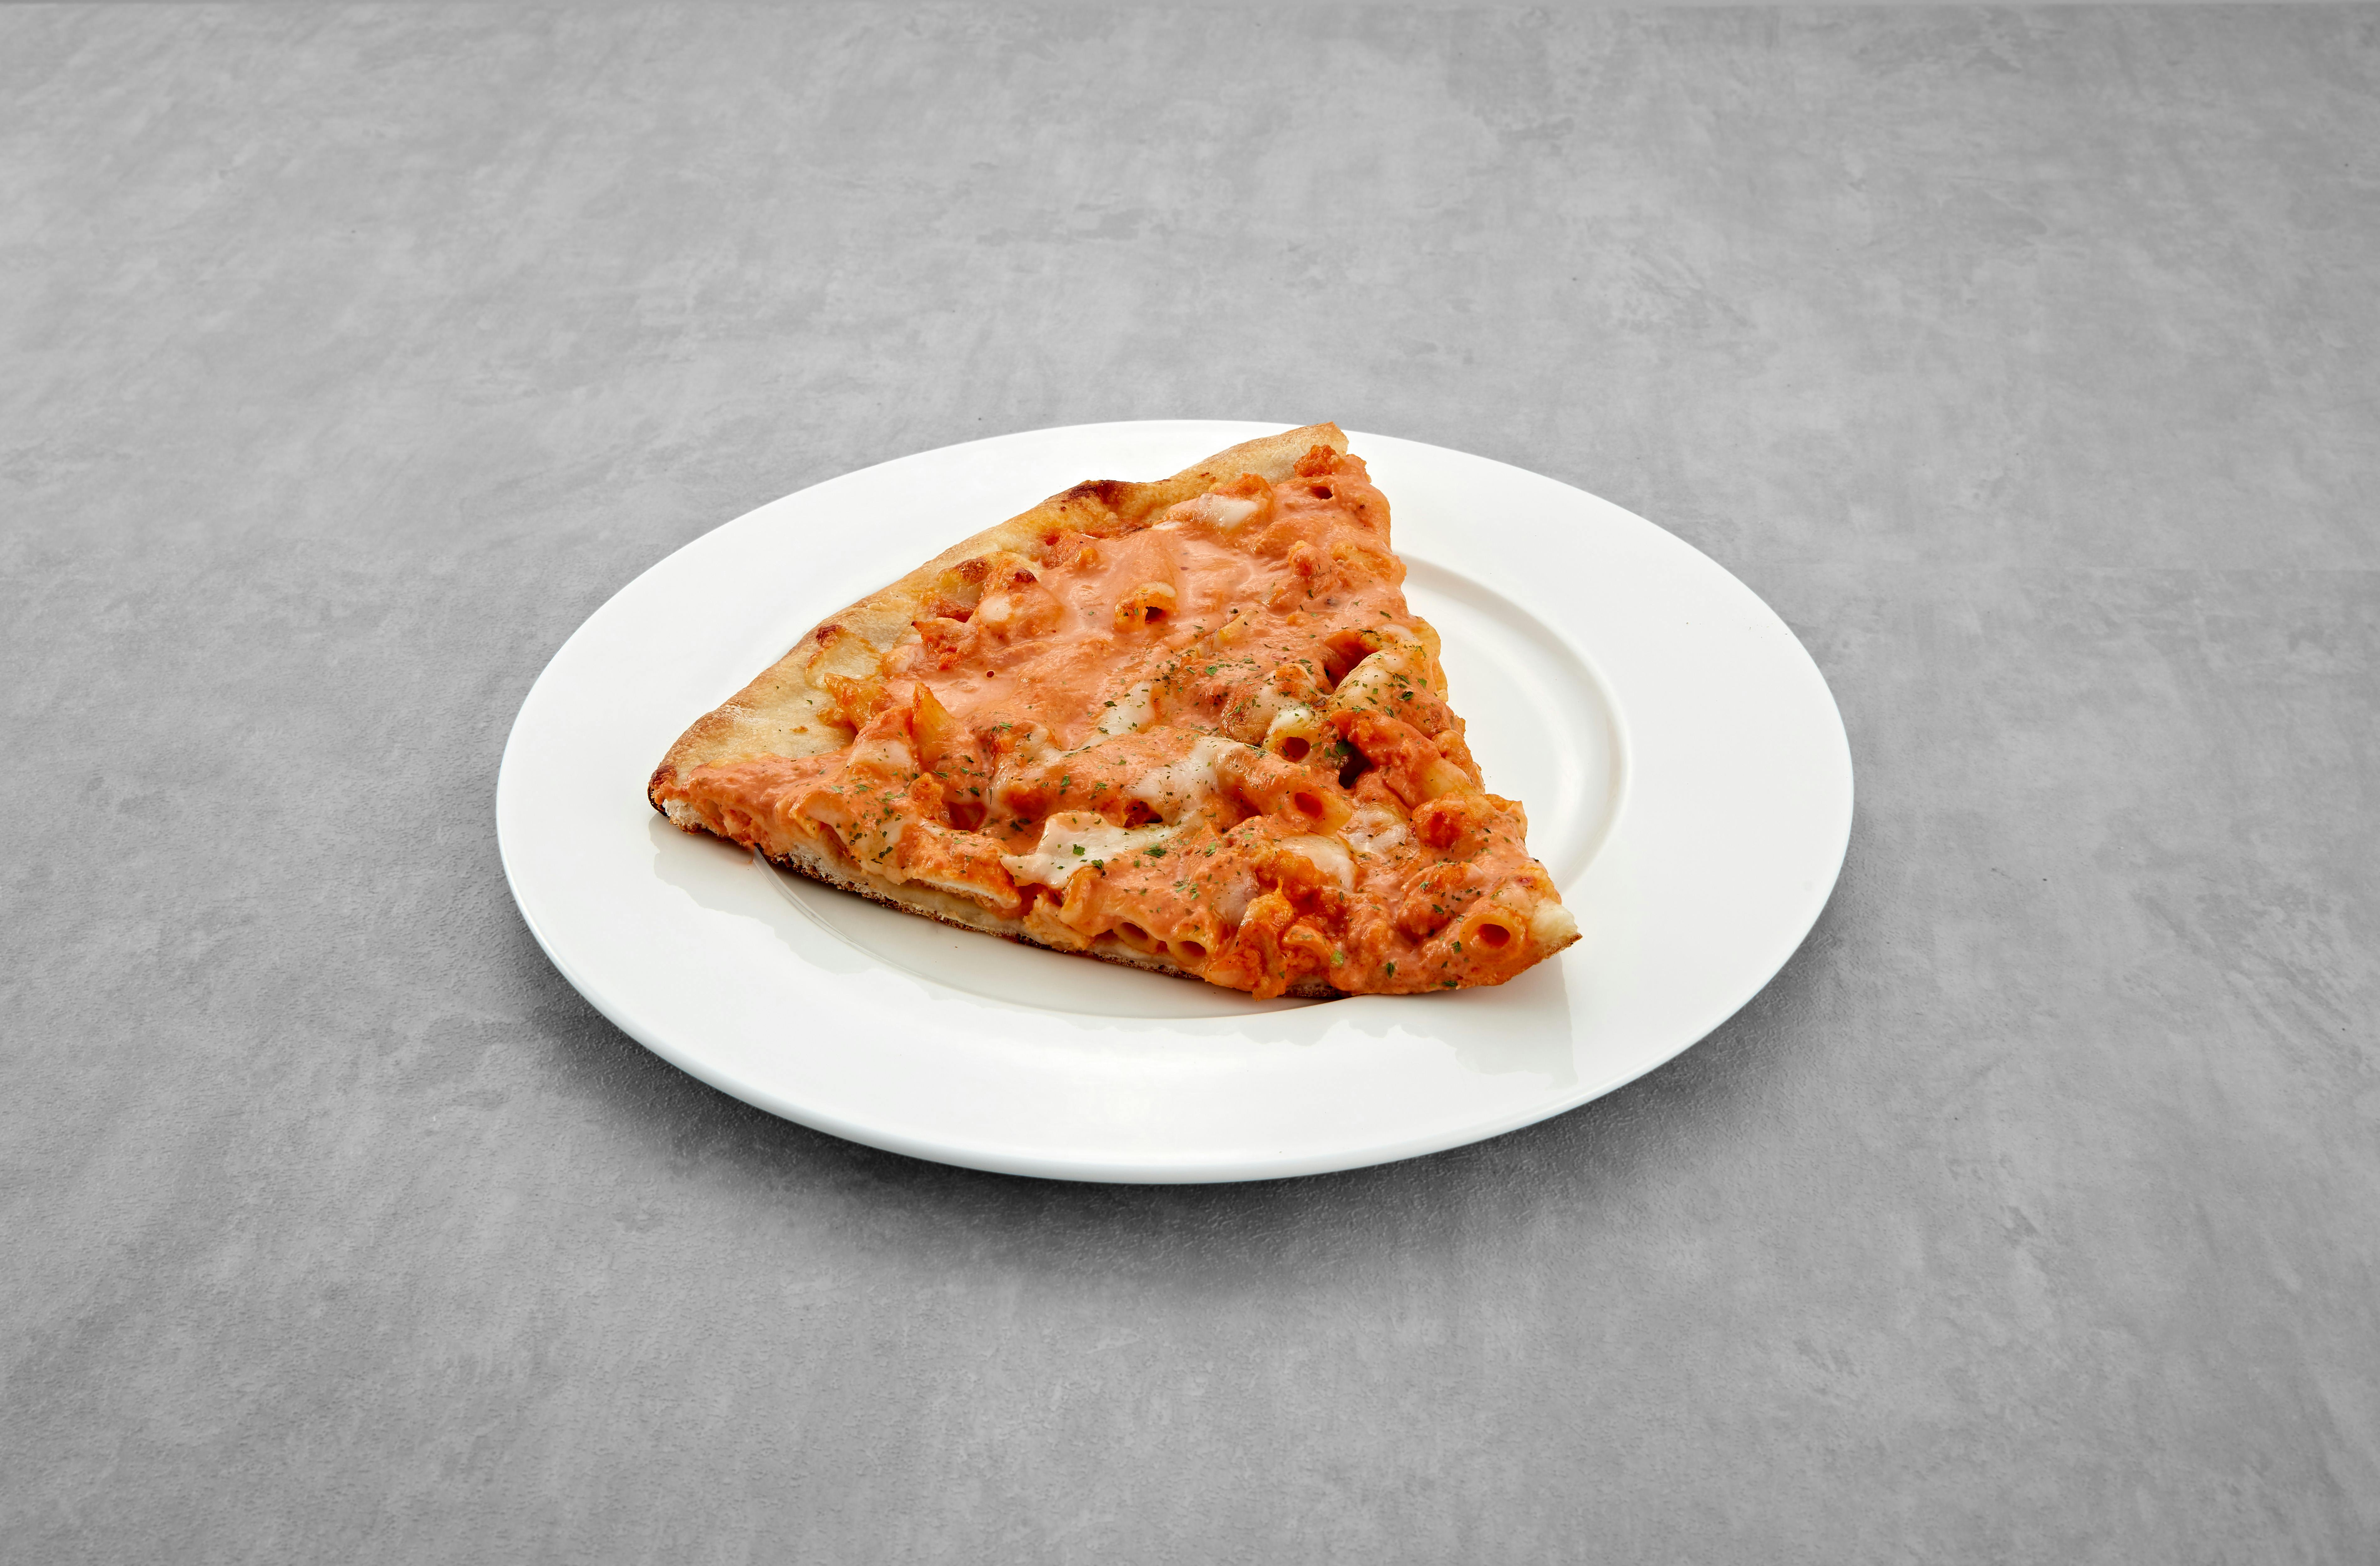 Penne alla Vodka Chicken Pizza Slice from Mario's Pizzeria in Seaford, NY